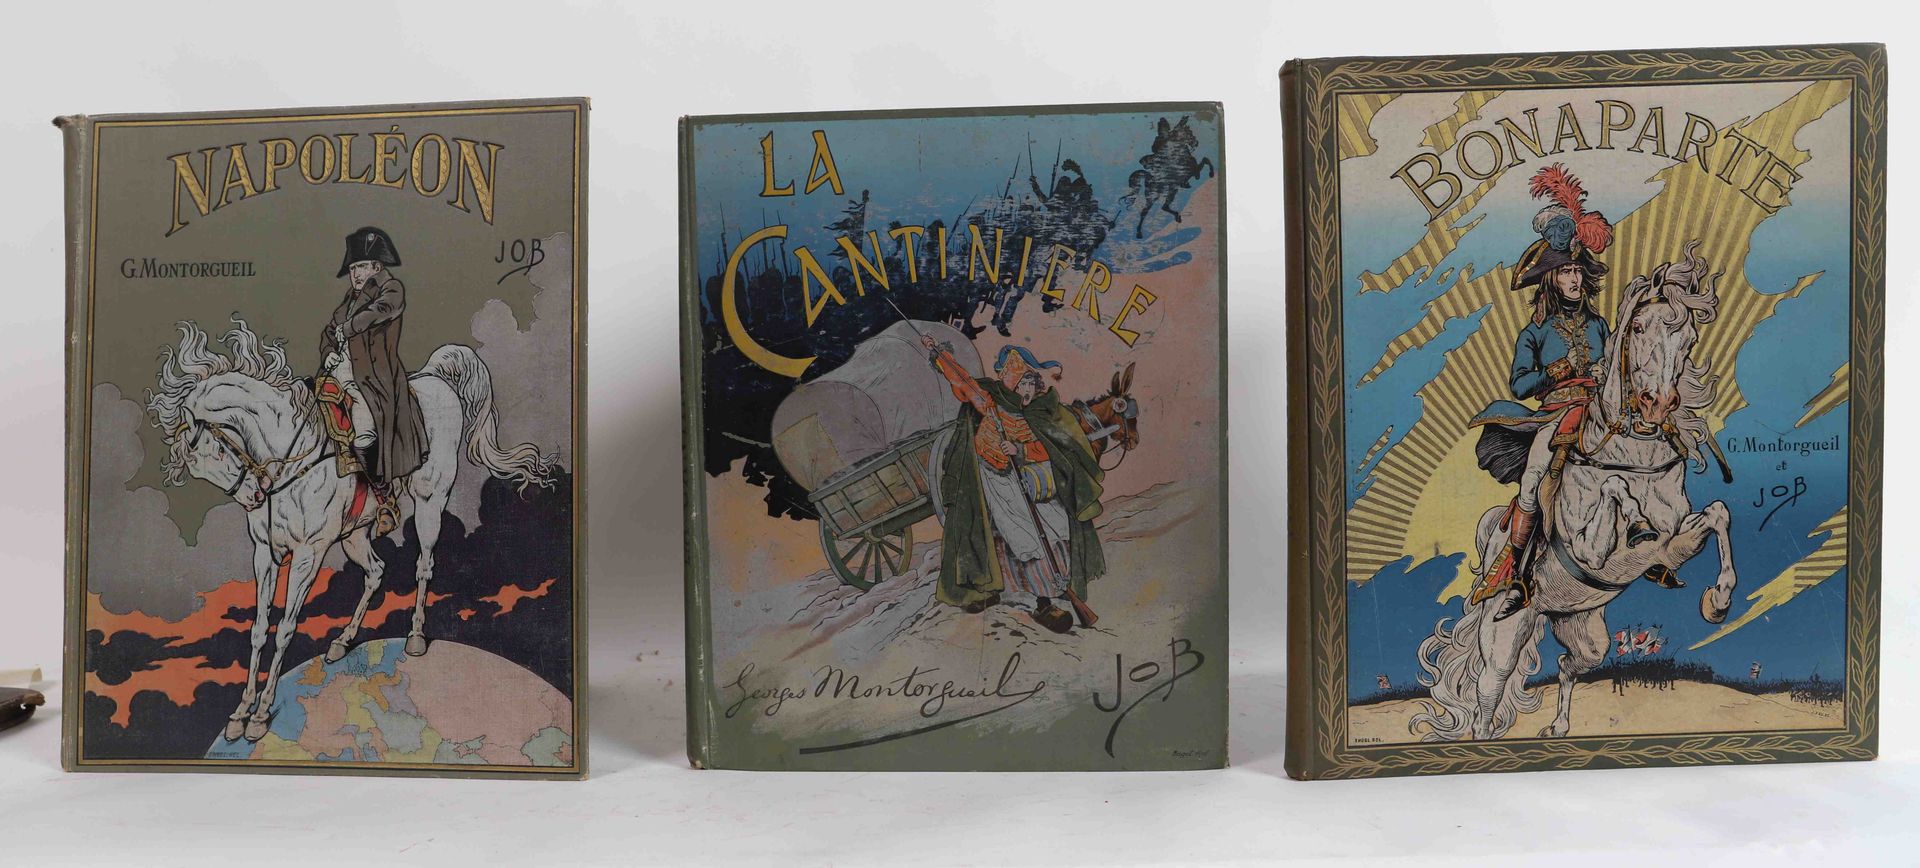 Null "La Cantinière", "Bonaparte", "Napoleon". 

Set of 3 books, illustration Ja&hellip;